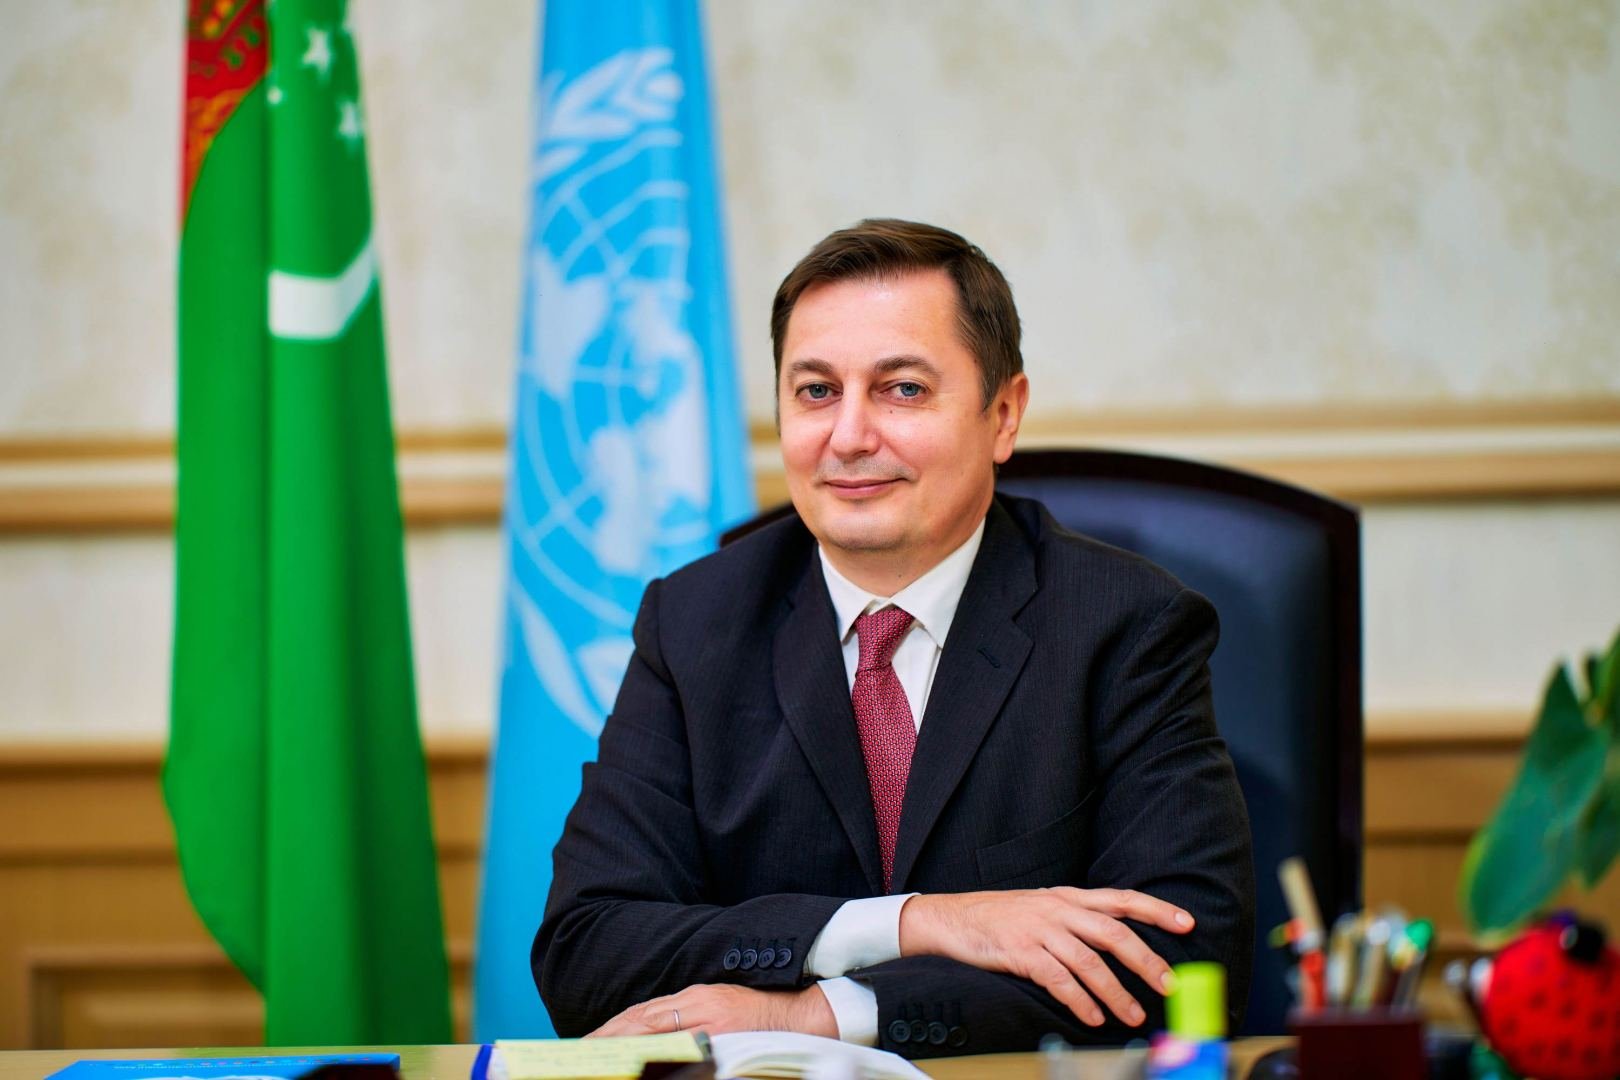 В Туркменистане уделяется пристальное внимание развитию зеленой экономики - ООН